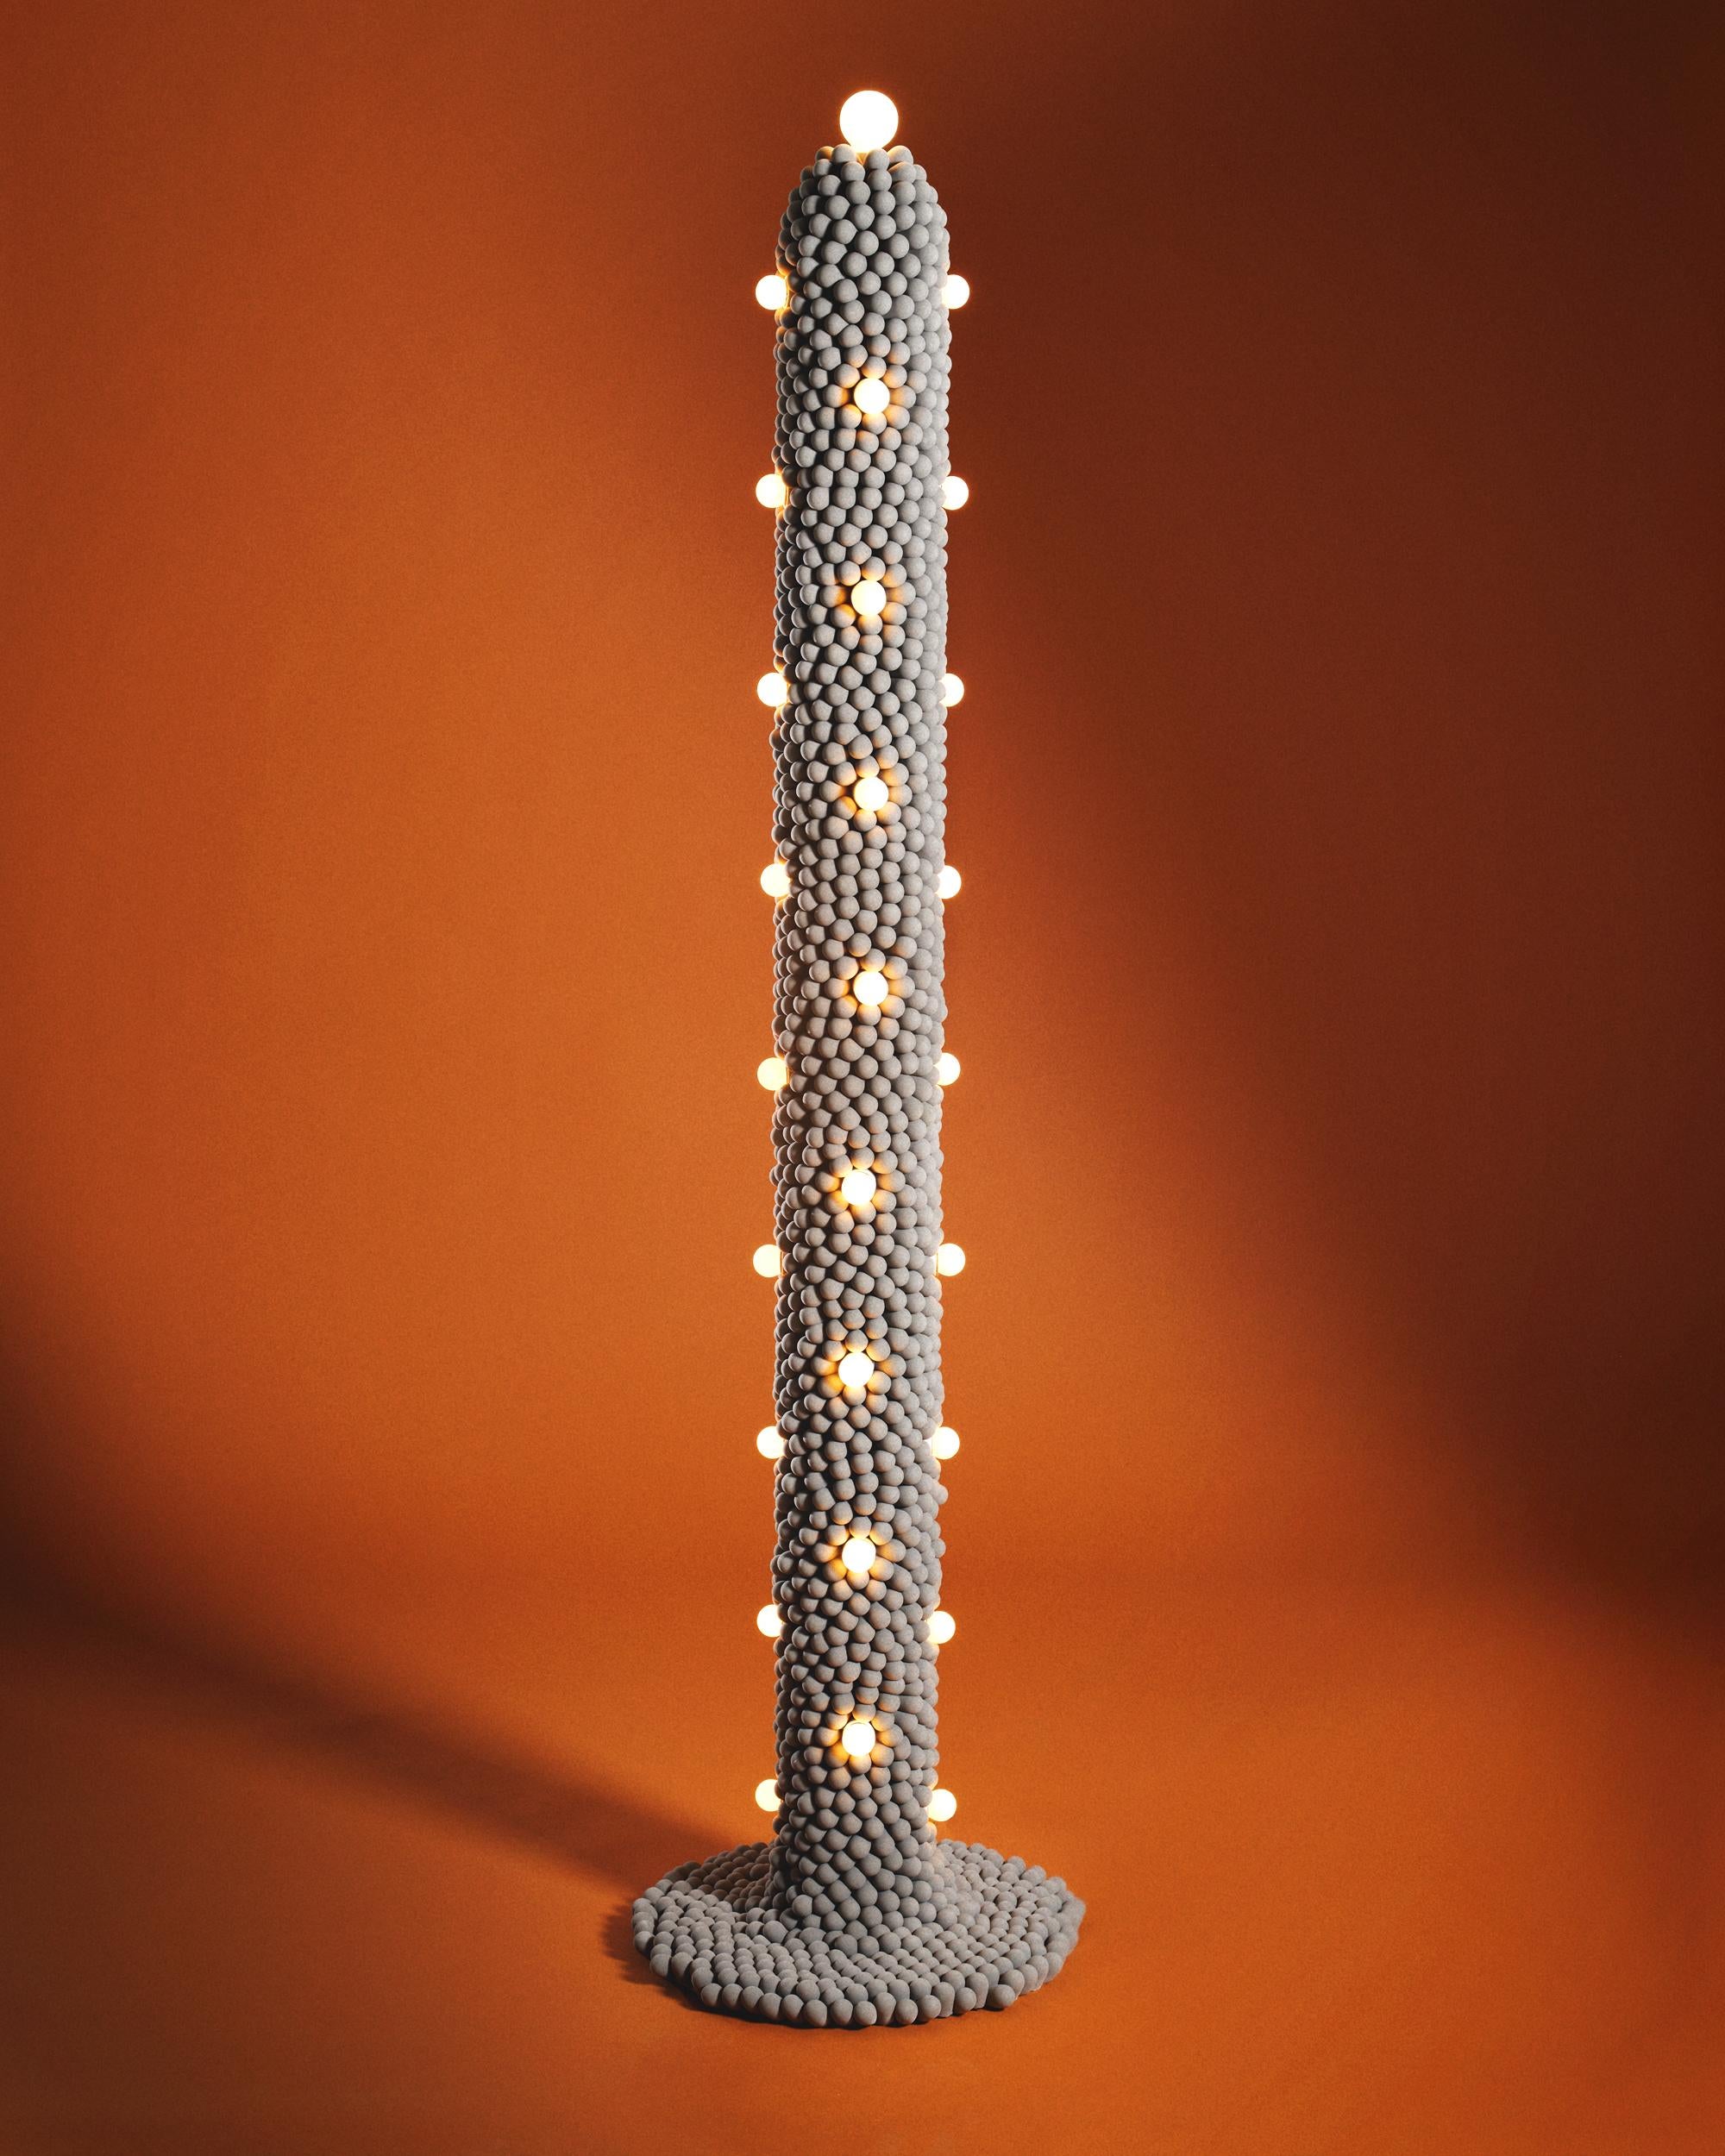 Diese Lampe ist aus gegossenen Schaumstoffnoppen gefertigt, die von Hand an einen Metallrahmen geheftet werden. Es ist Teil einer neuen Schaumstoff-Kollektion von Joseph Algieri, bei der gegossener, hergestellter Schaumstoff in Anlehnung an die